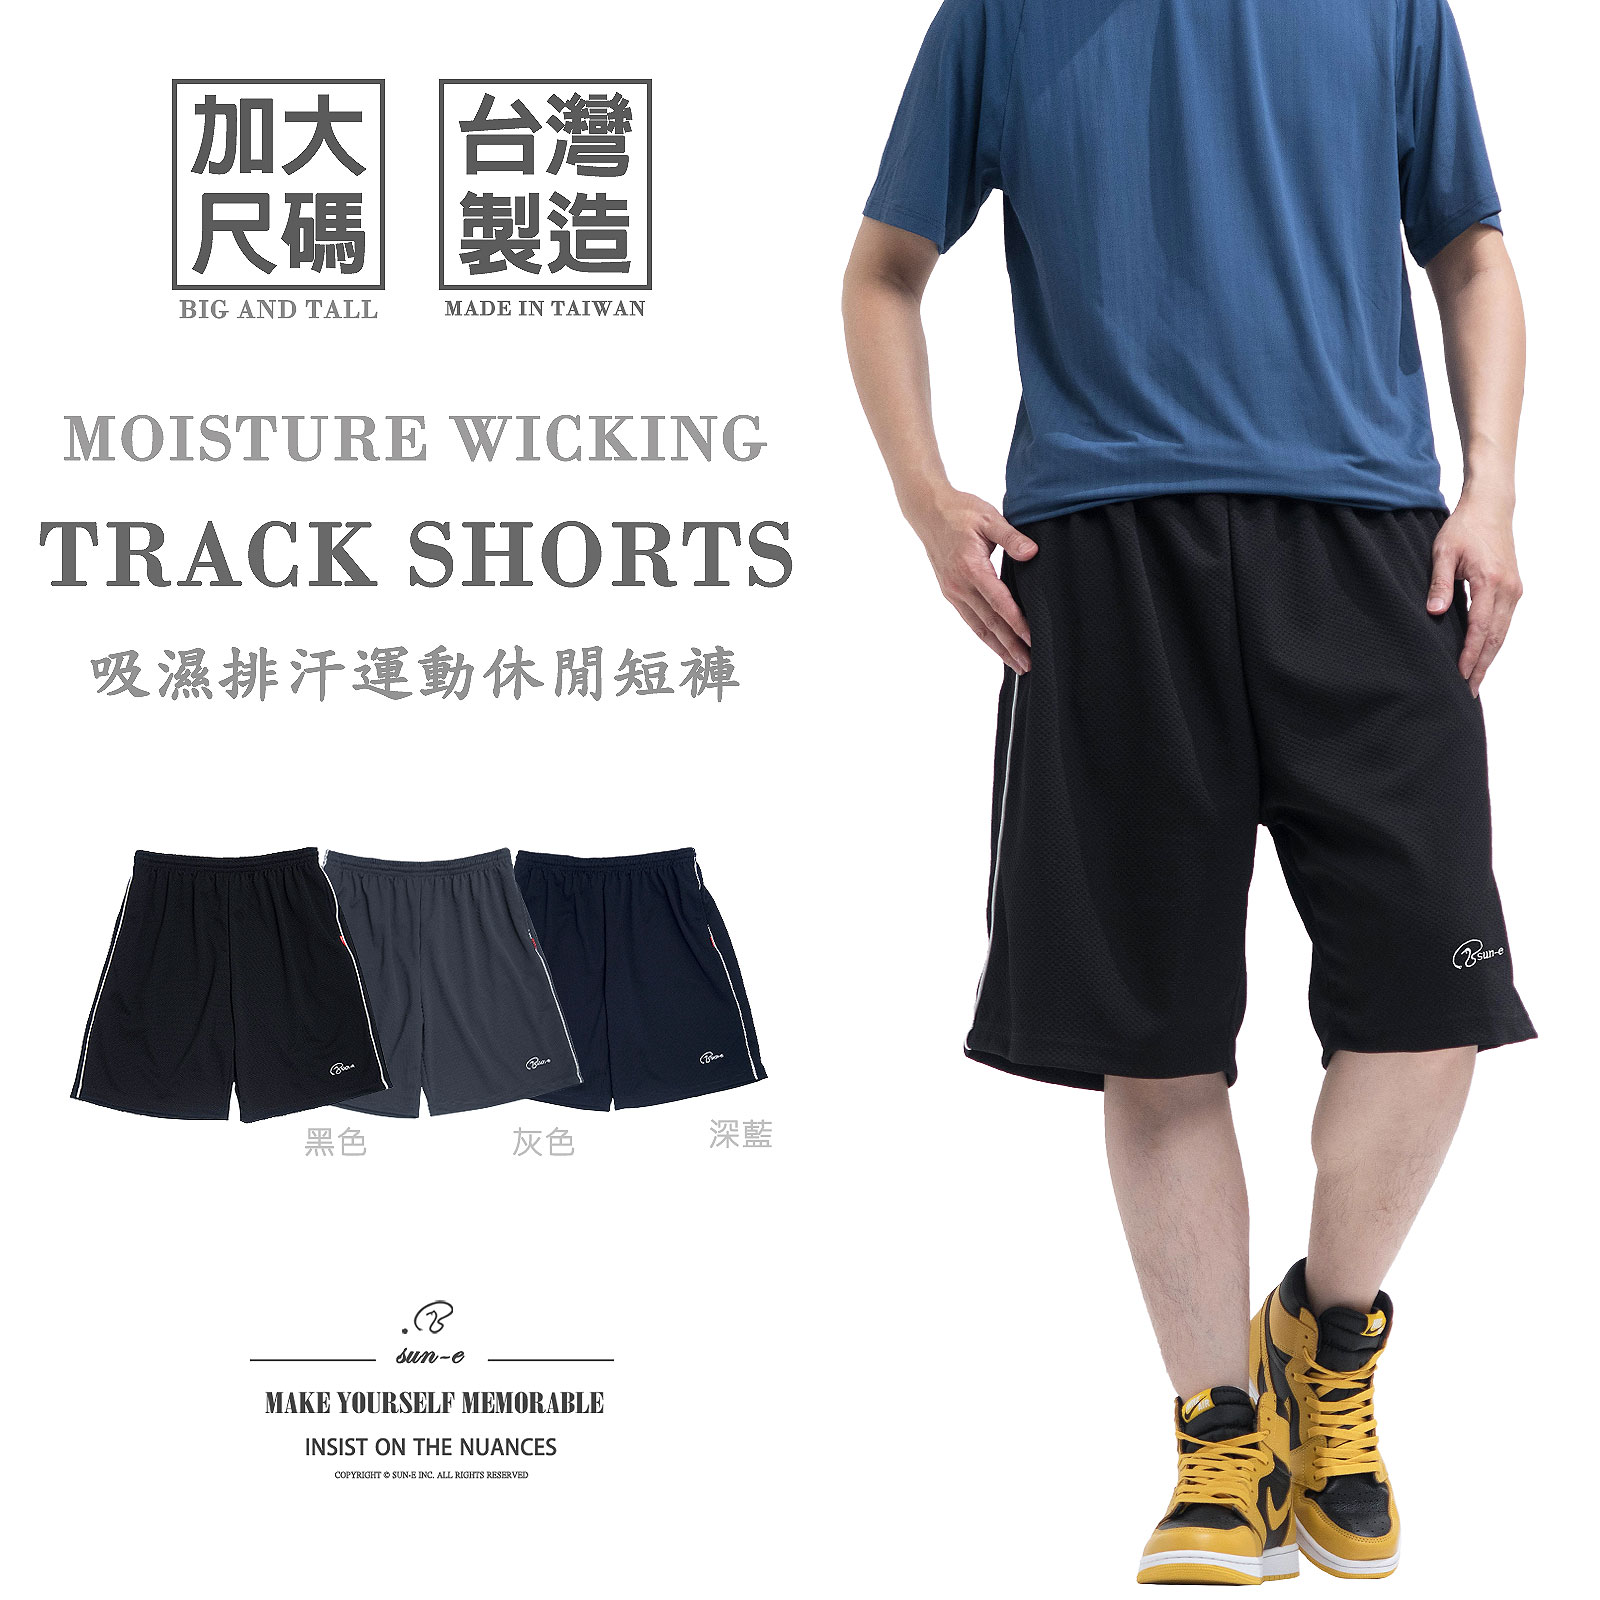 加大尺碼吸濕排汗短褲 台灣製短褲 排汗速乾運動短褲 鬆緊腰球褲 休閒短褲 彈性短褲 大尺碼男裝 機能性布料休閒褲 黑色短褲 運動褲 Big And Tall Made In Taiwan Moisture Wicking Shorts Track Shorts Track Pants Short Pants (003-8061-08)深藍色、(003-8061-21)黑色、(003-8061-22)灰色 4L 5L (腰圍:38~45英吋 / 97~114公分) 男 [實體店面保障] sun-e